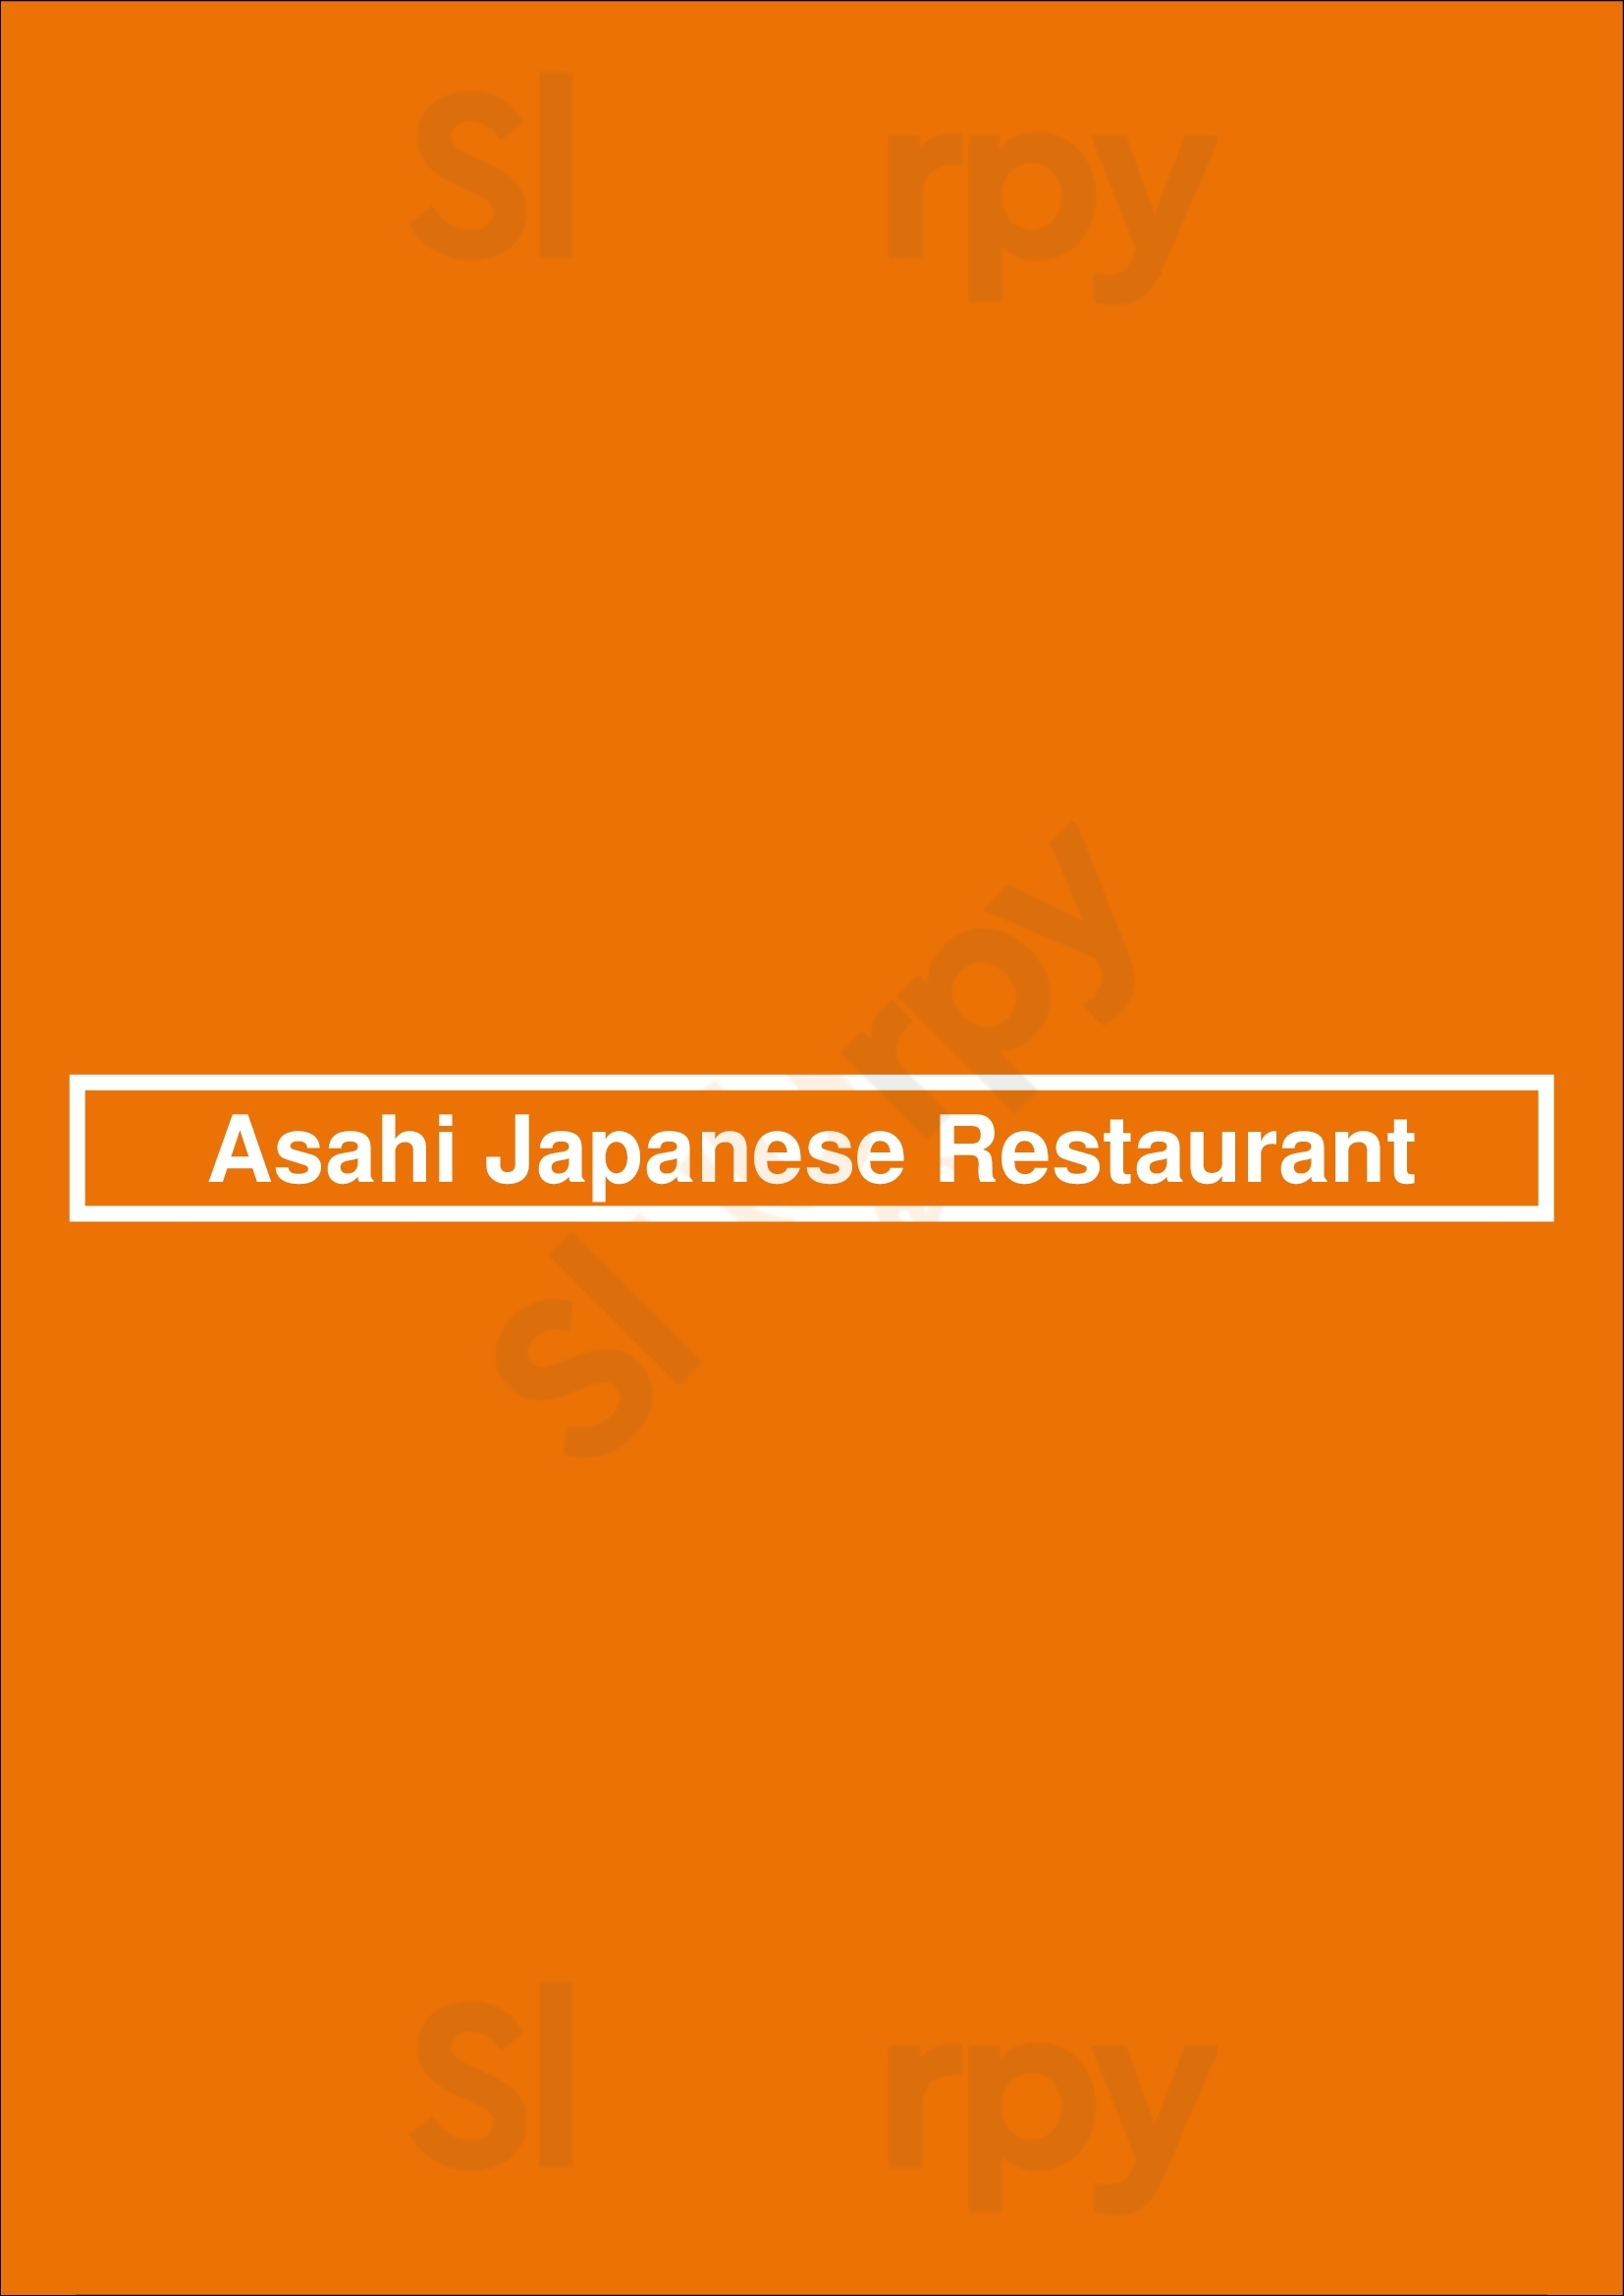 Asahi Japanese Restaurant Syracuse Menu - 1